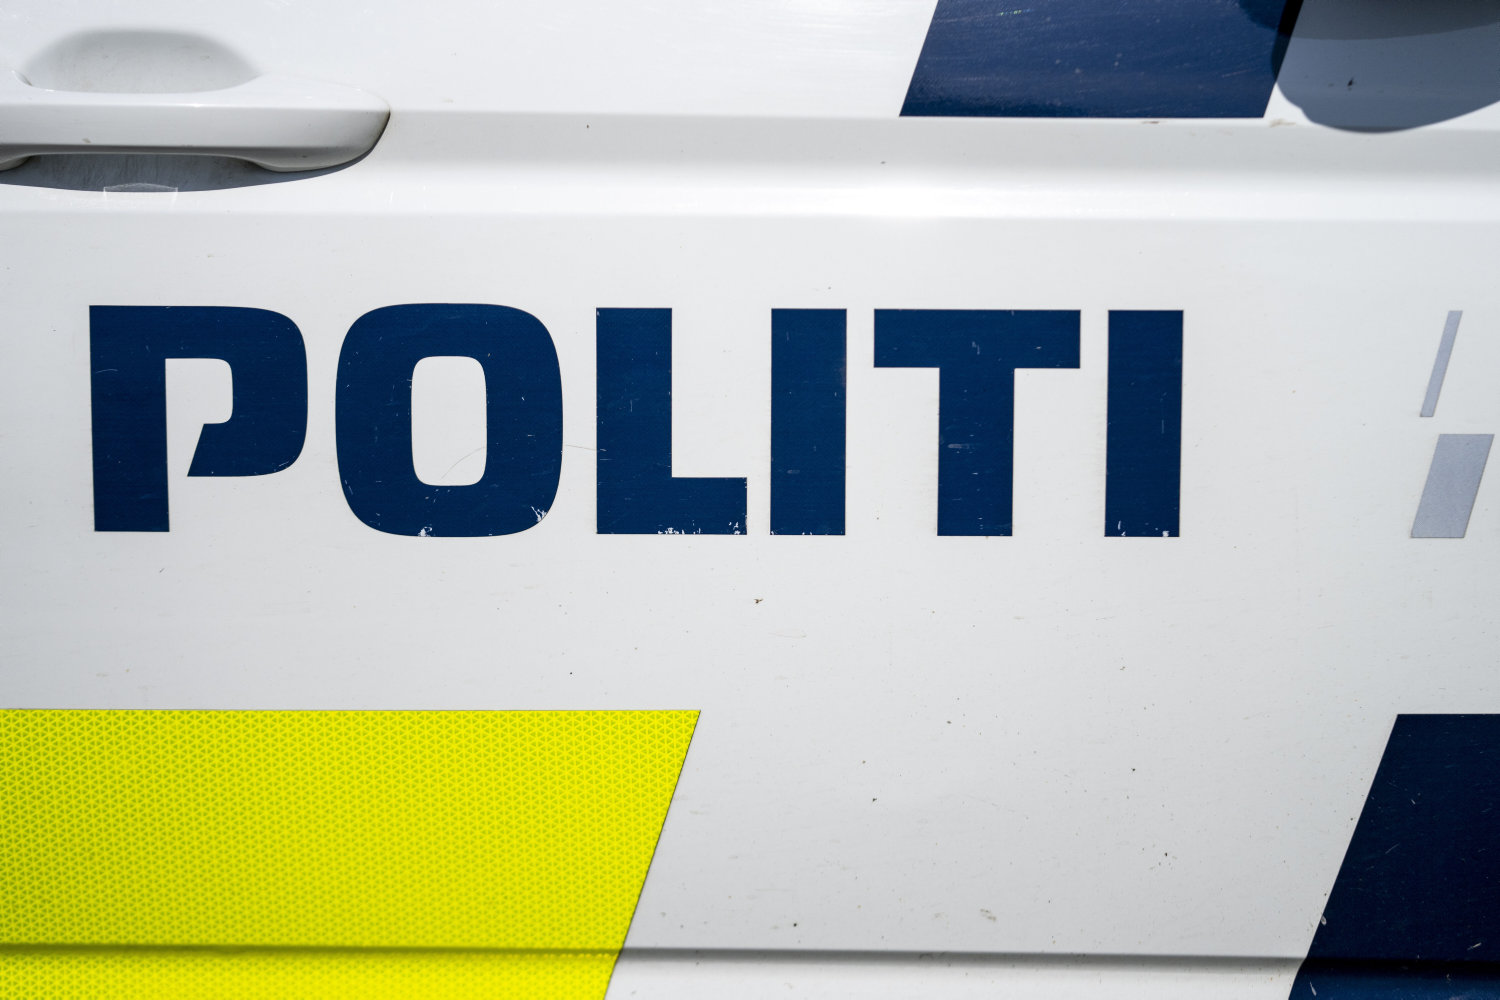 seks syrebomber er kastet ind i skolegård i esbjerg